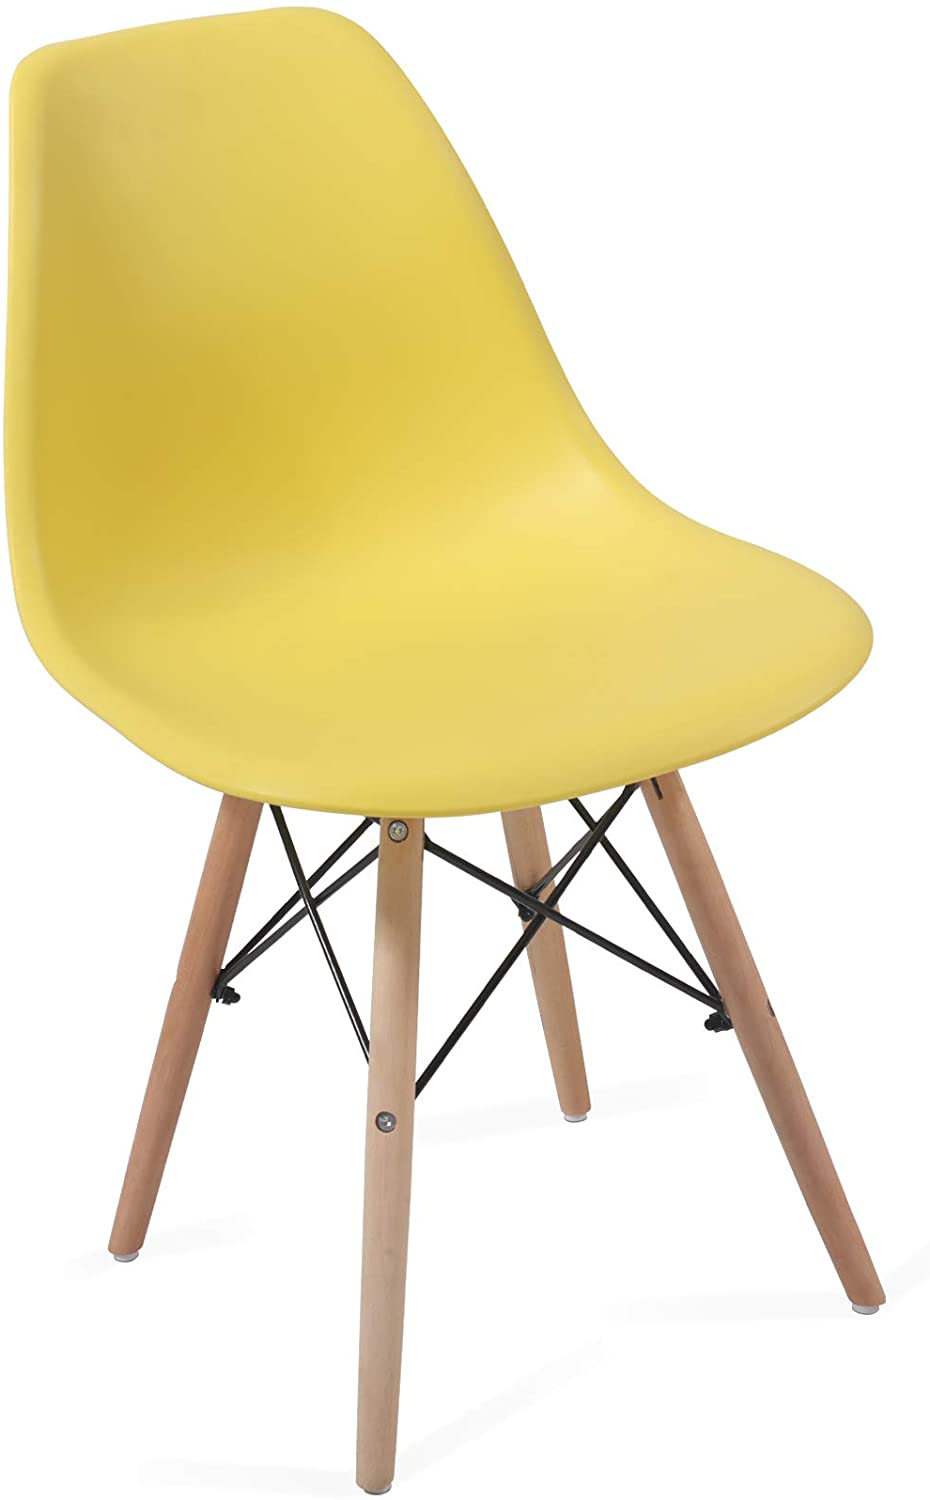 Eetkamerstoelen – Lounge stoelen – Scandinavische stijl – Retro – Vintage – Plastic – Set van 6 – Geel